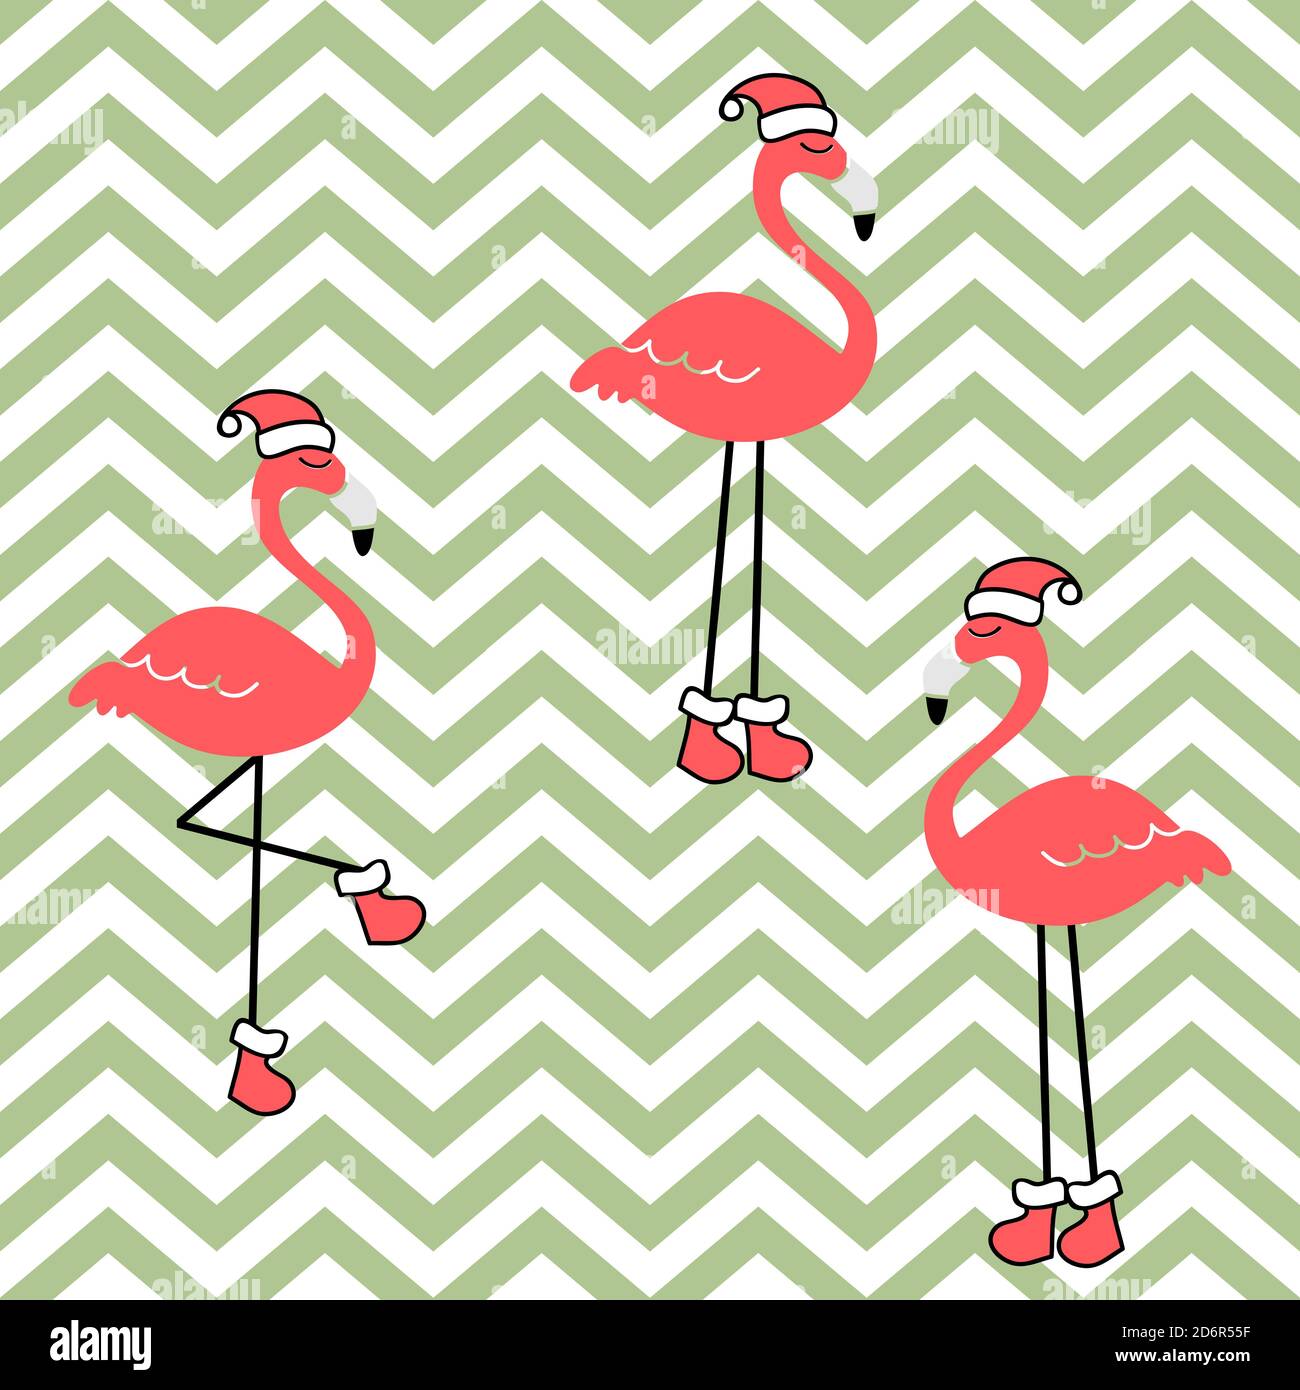 Weihnachtliche Nahtloses Muster mit Flamingo für Grußkarten, Geschenkpapiere. Handgezeichnete Vektorgrafik Stock Vektor